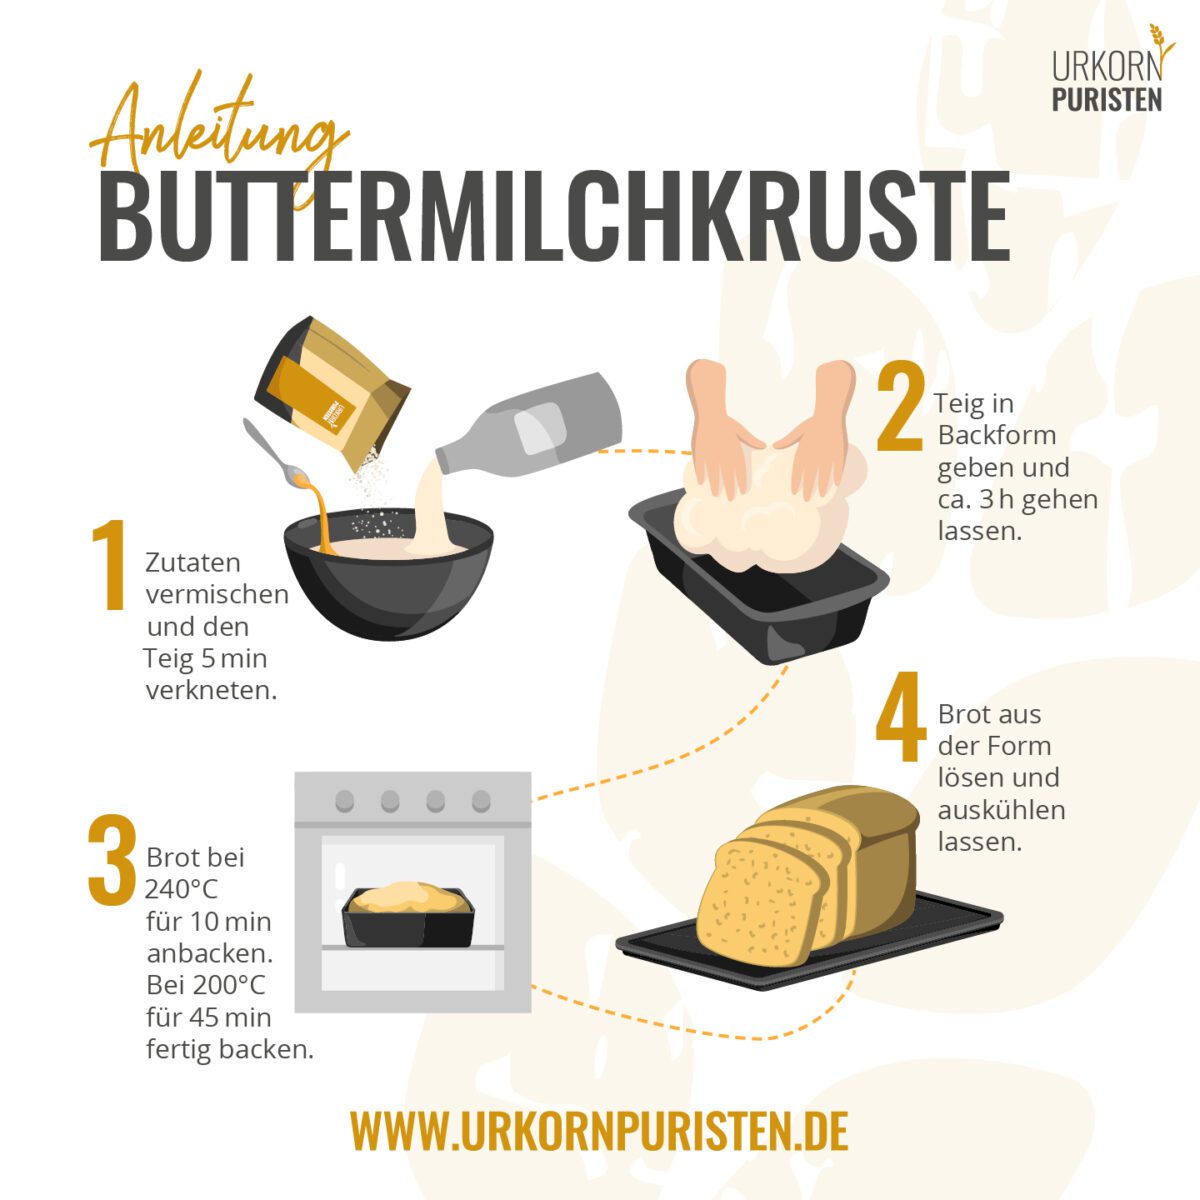 Grafik zur Herstellung der Backmischung Buttermilchkruste